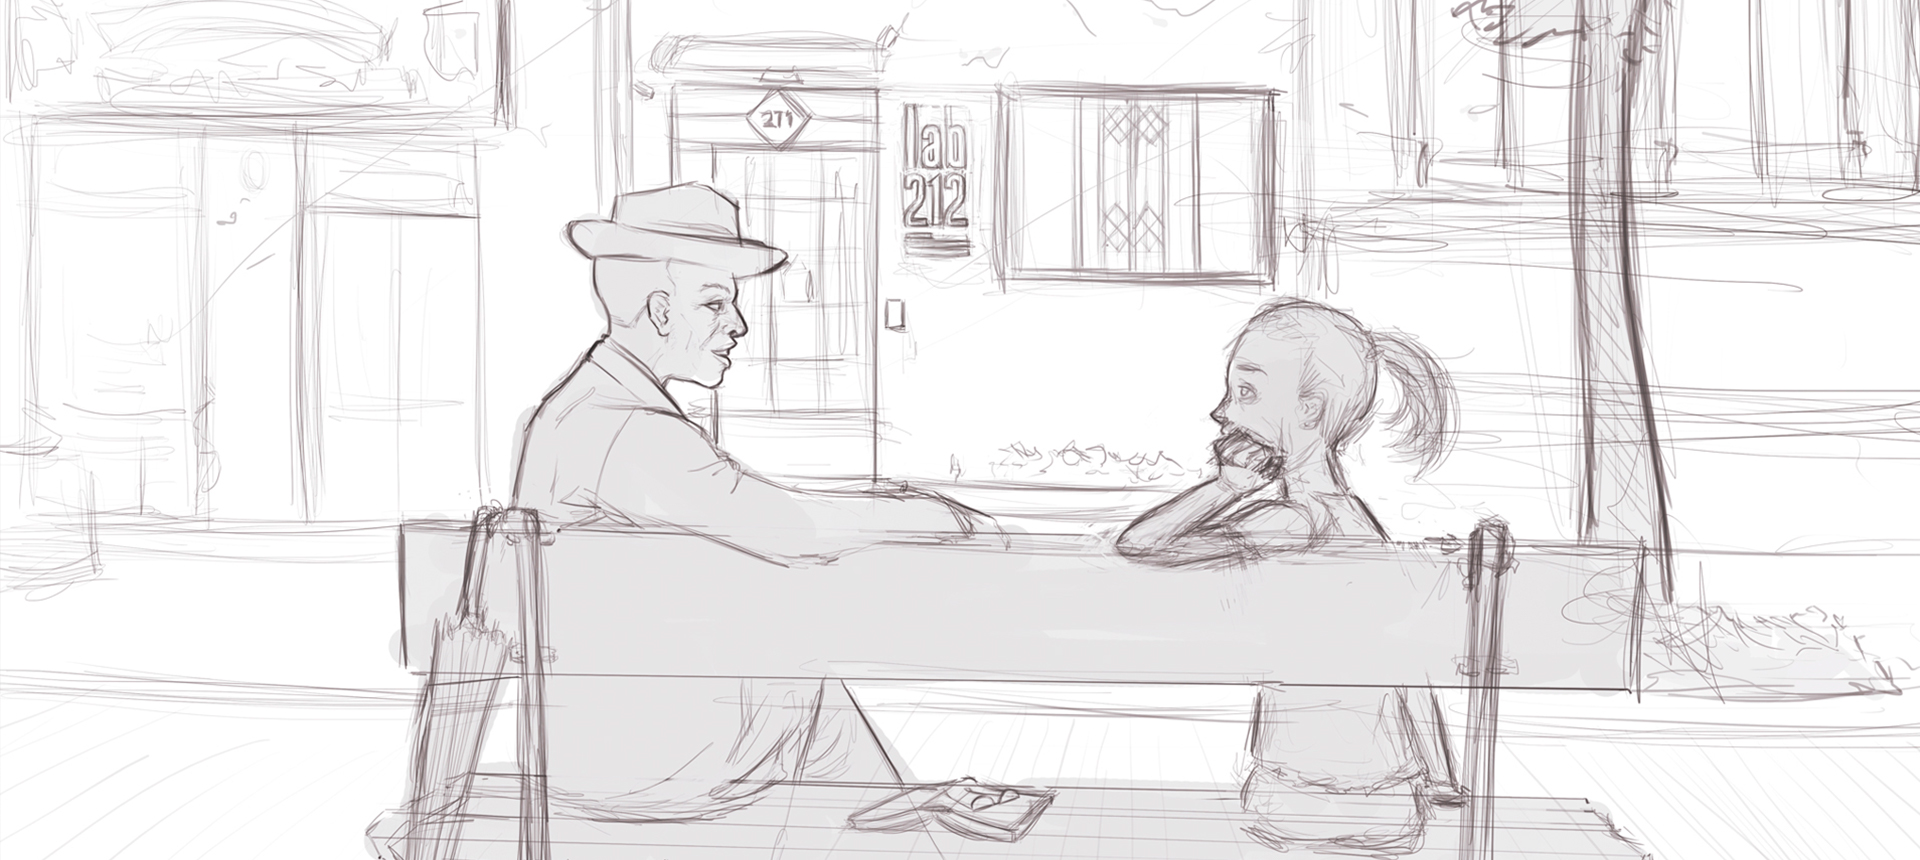 Esboço de um senhor e uma garota sentados em um banco conversando. No fundo, há alguns comércios, dentre eles uma pequena casa com a logo "lab212"